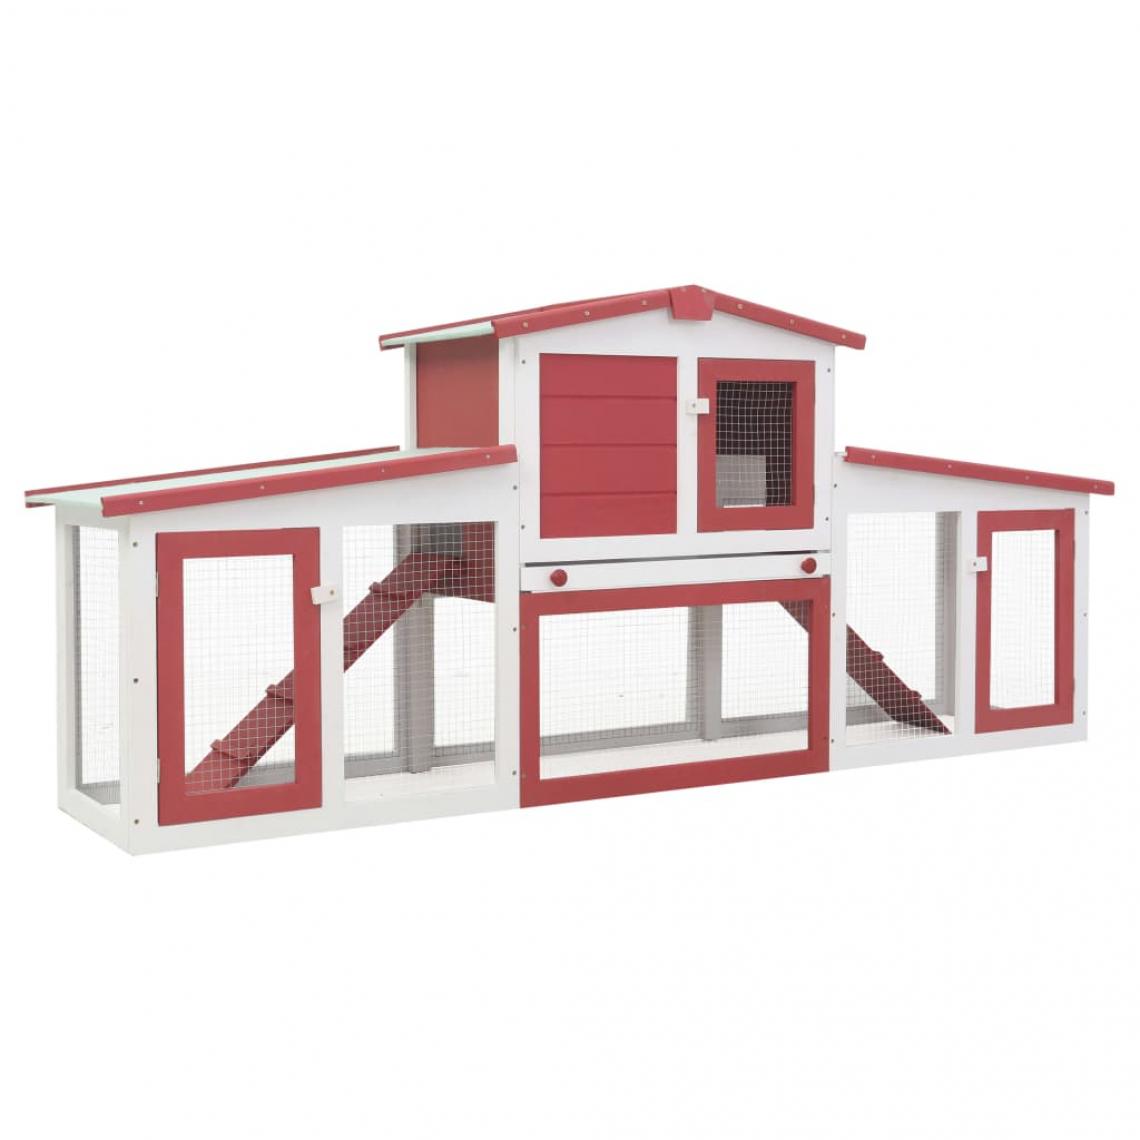 Helloshop26 - Clapier cage large d'extérieur 204 x 45 x 85 cm bois rouge et blanc 02_0000609 - Clapier